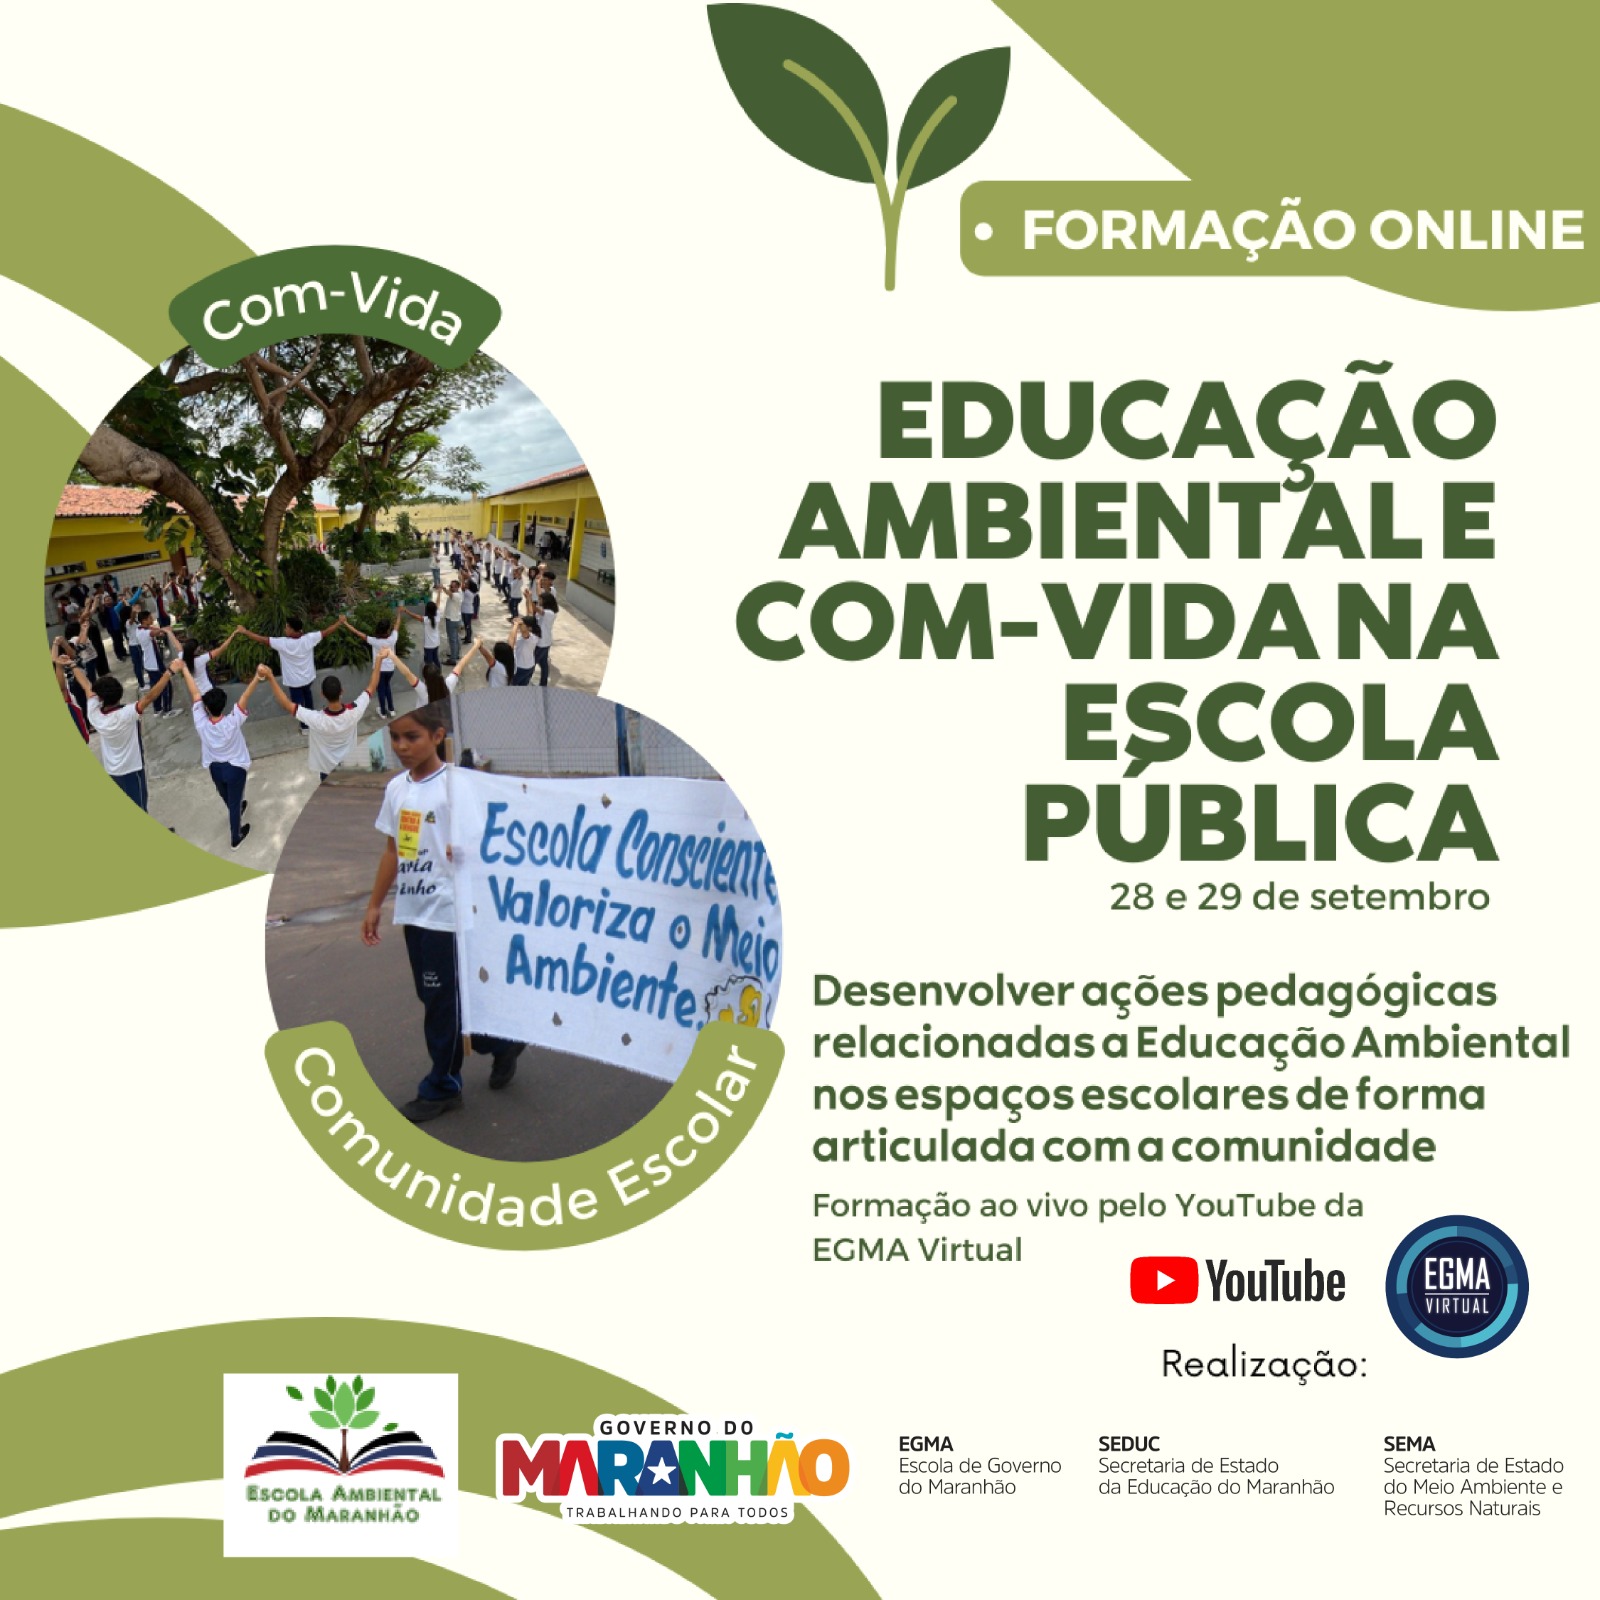 AGA/Uema, estará presente na 1º Etapa da Formação virtual de professores “Educação Ambiental e COM-VIDA na Rede Pública”.